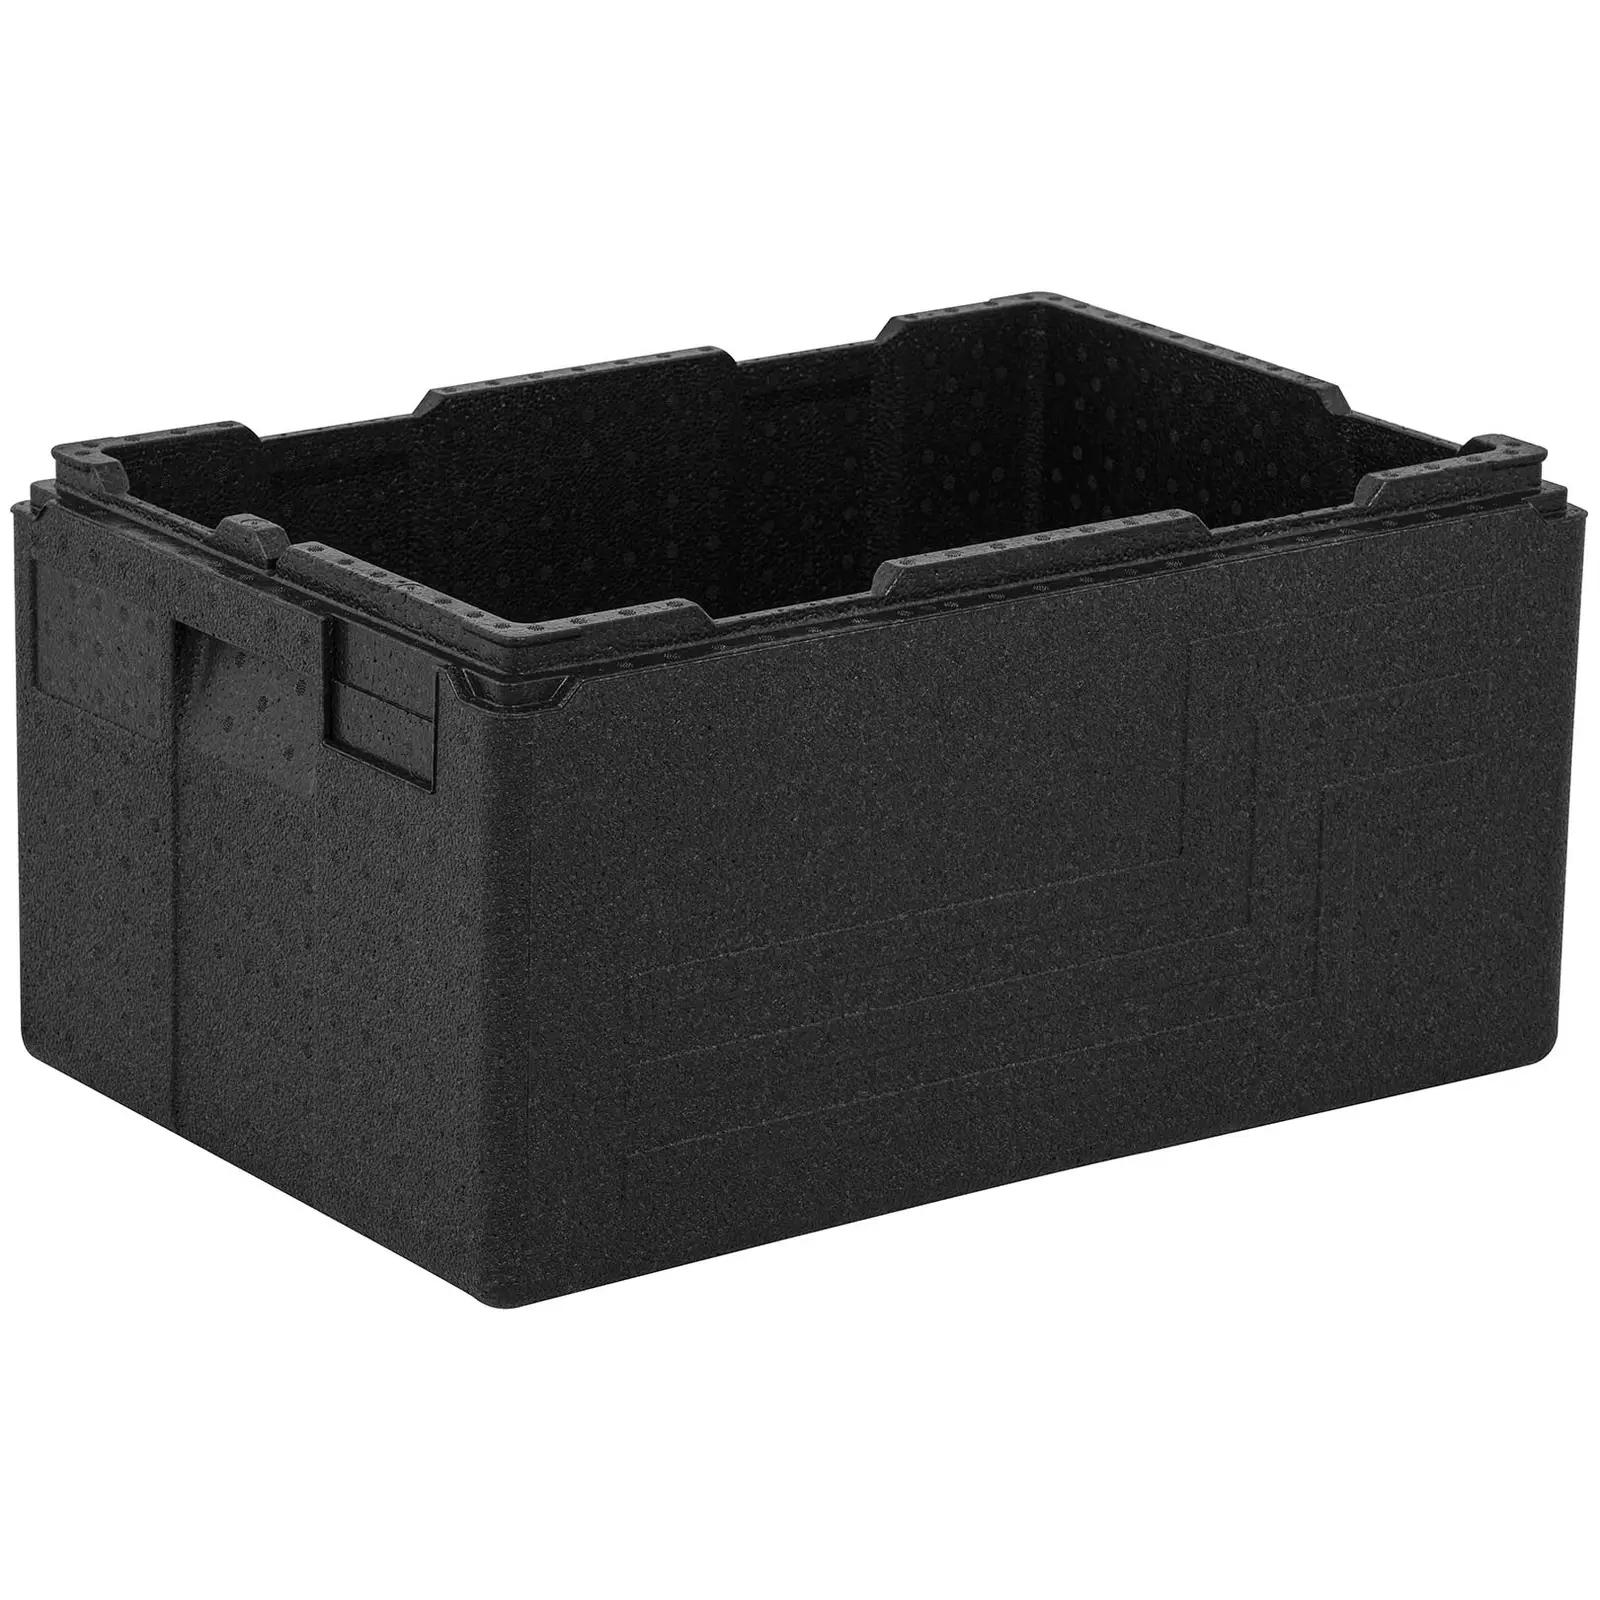 Termobox - posoda GN 1/1 (globoka 20 cm) - podstavek